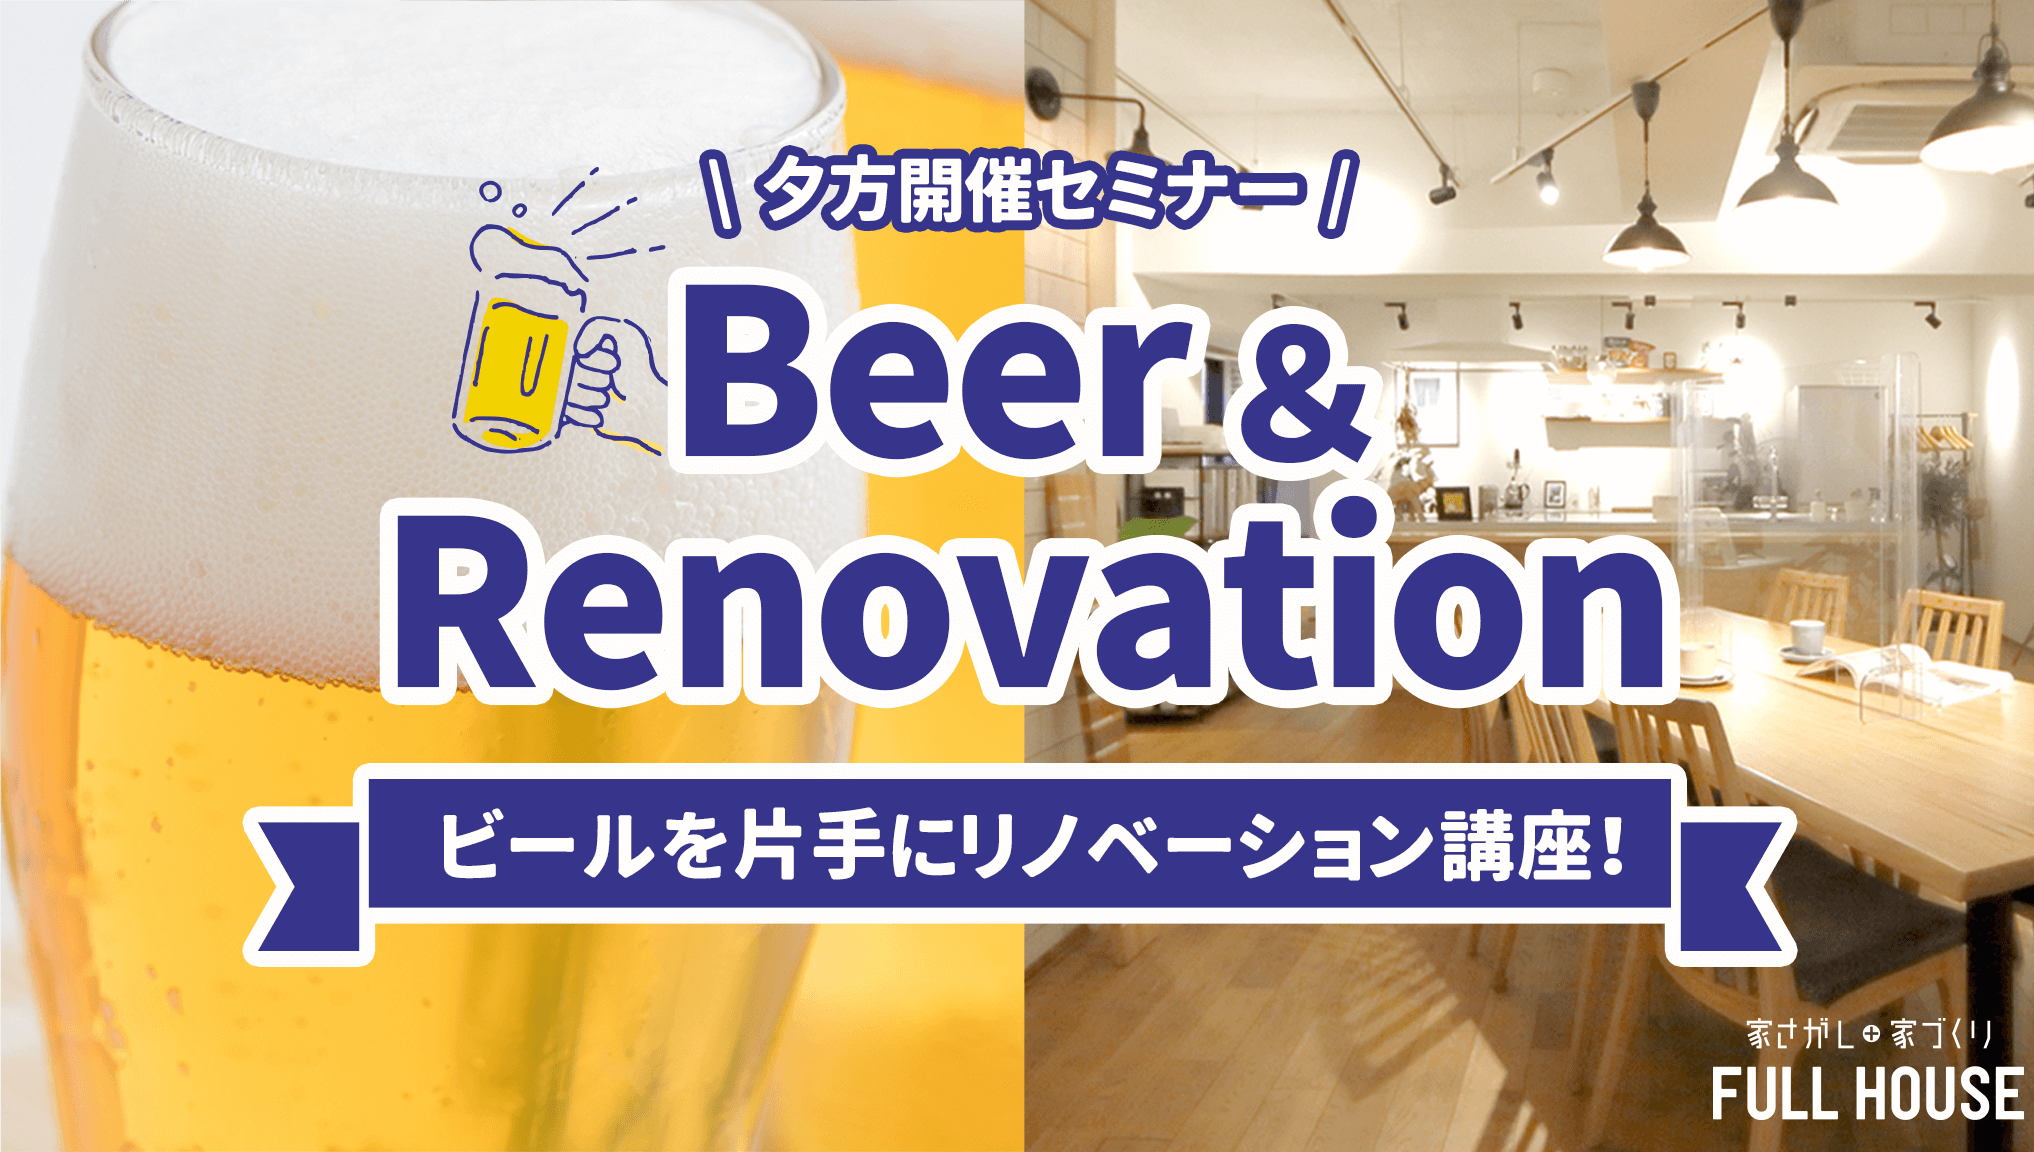 【 ビール × Renovation 】 お仕事帰りにビールをどうぞ。 ビール片手にリノベ―ションセミナー